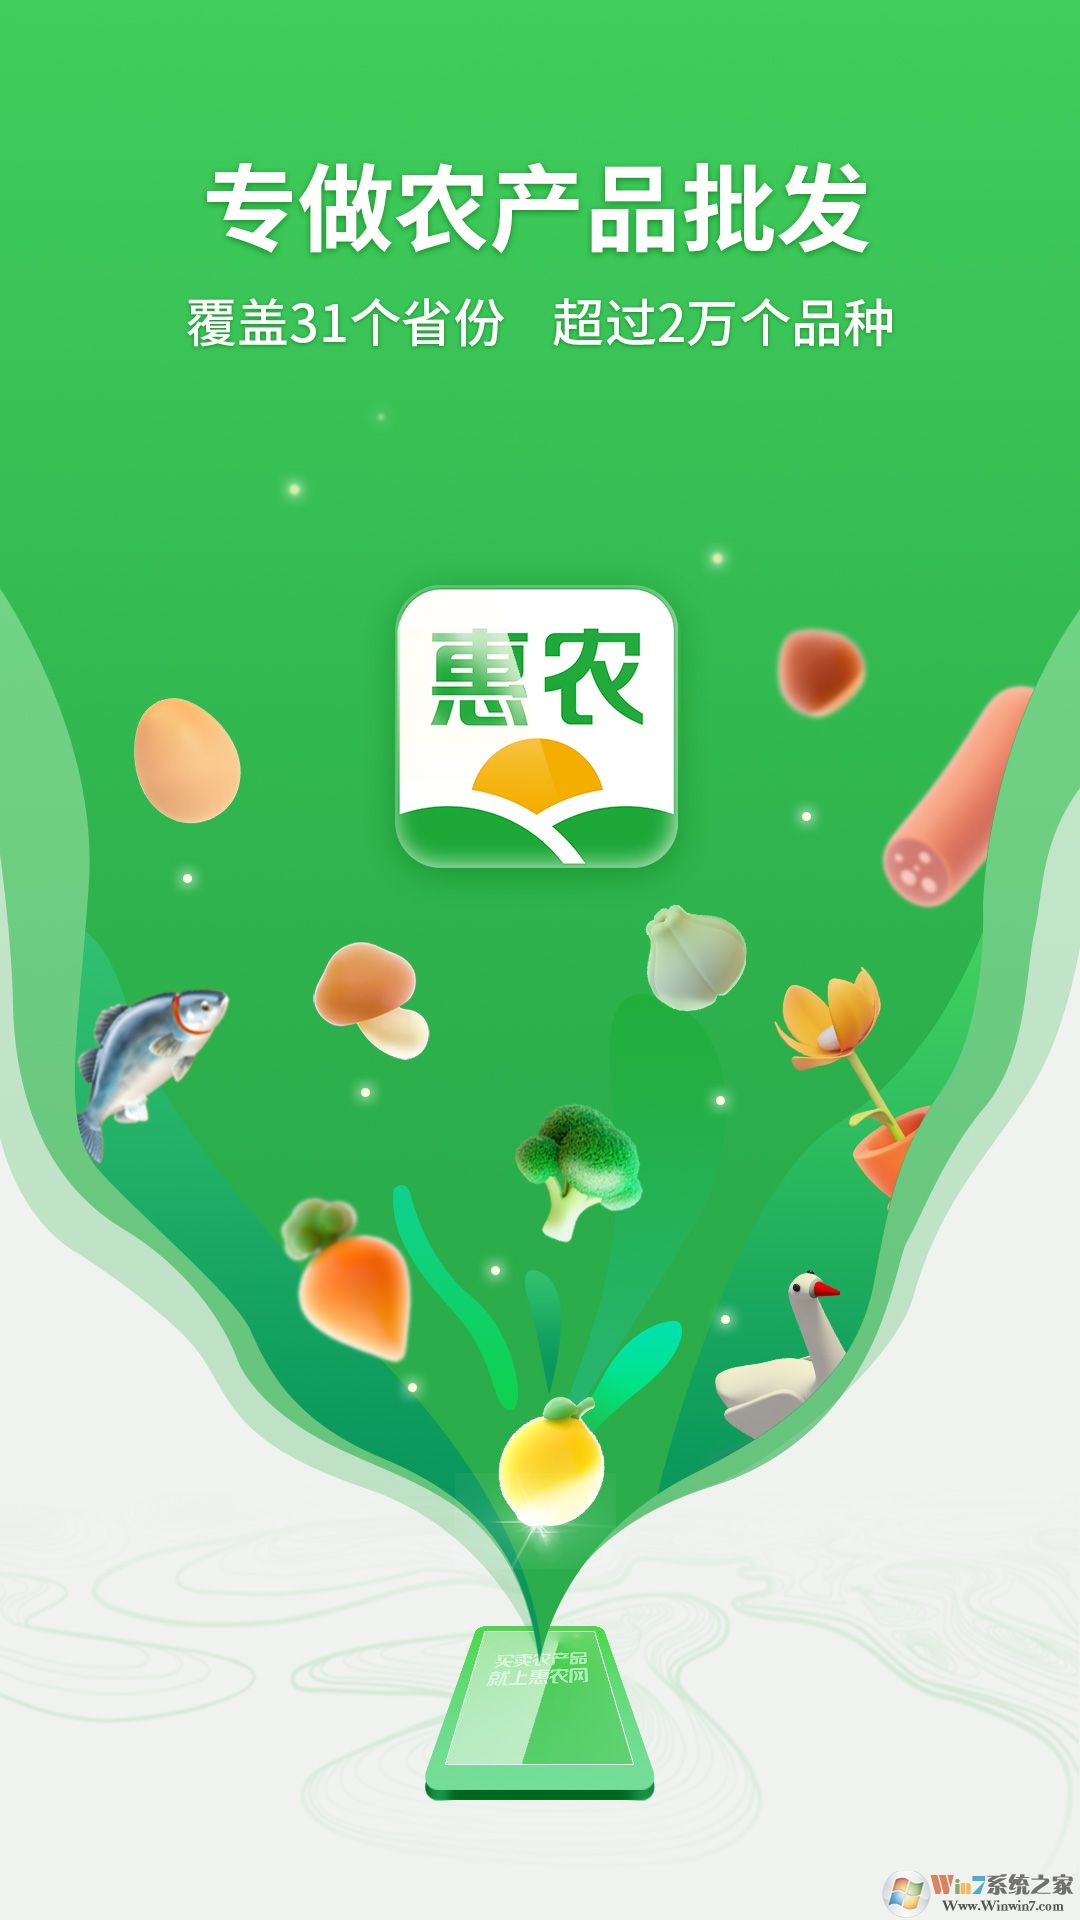 惠农网农产品交易平台